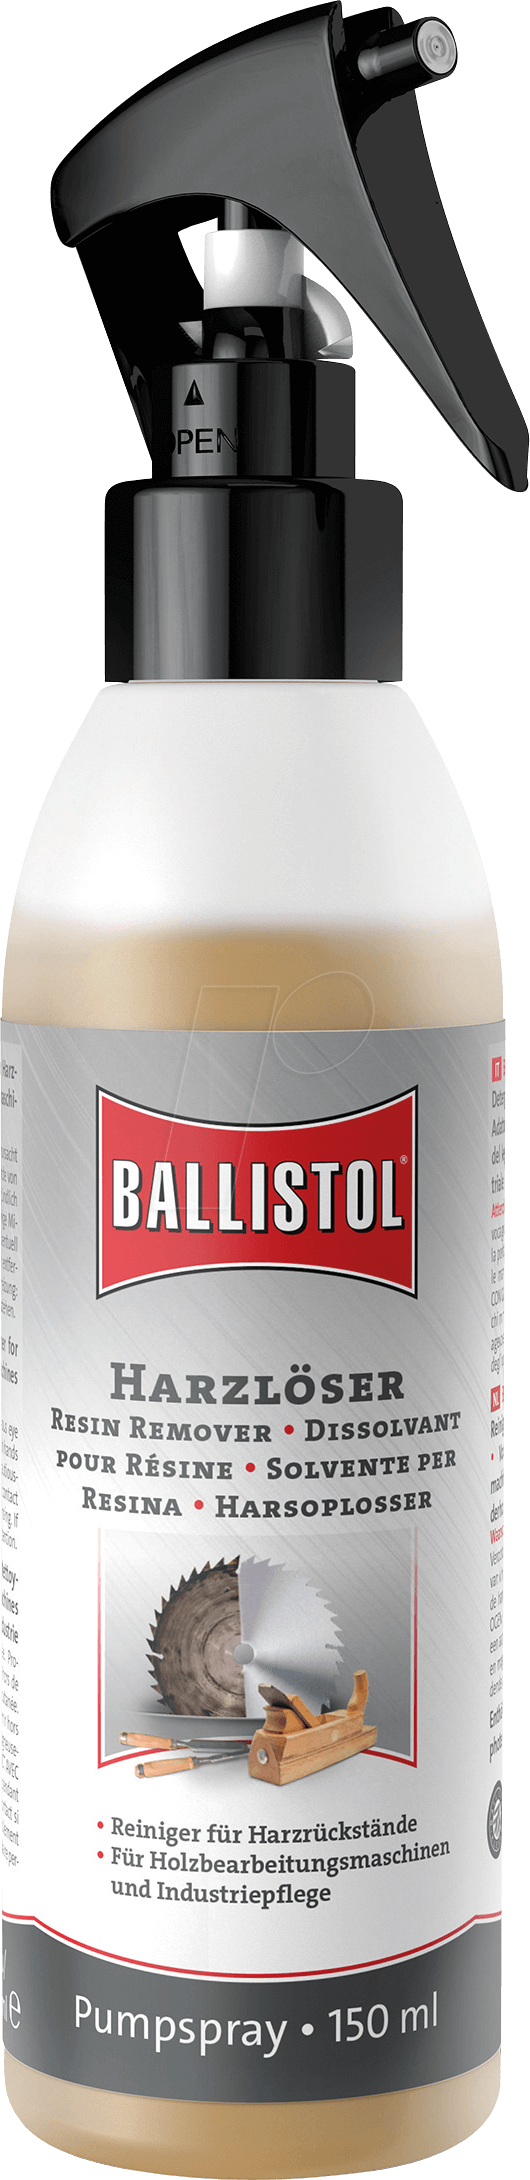 BALL 25435 - Harzlöser, 150 ml, Pumpspray von Ballistol